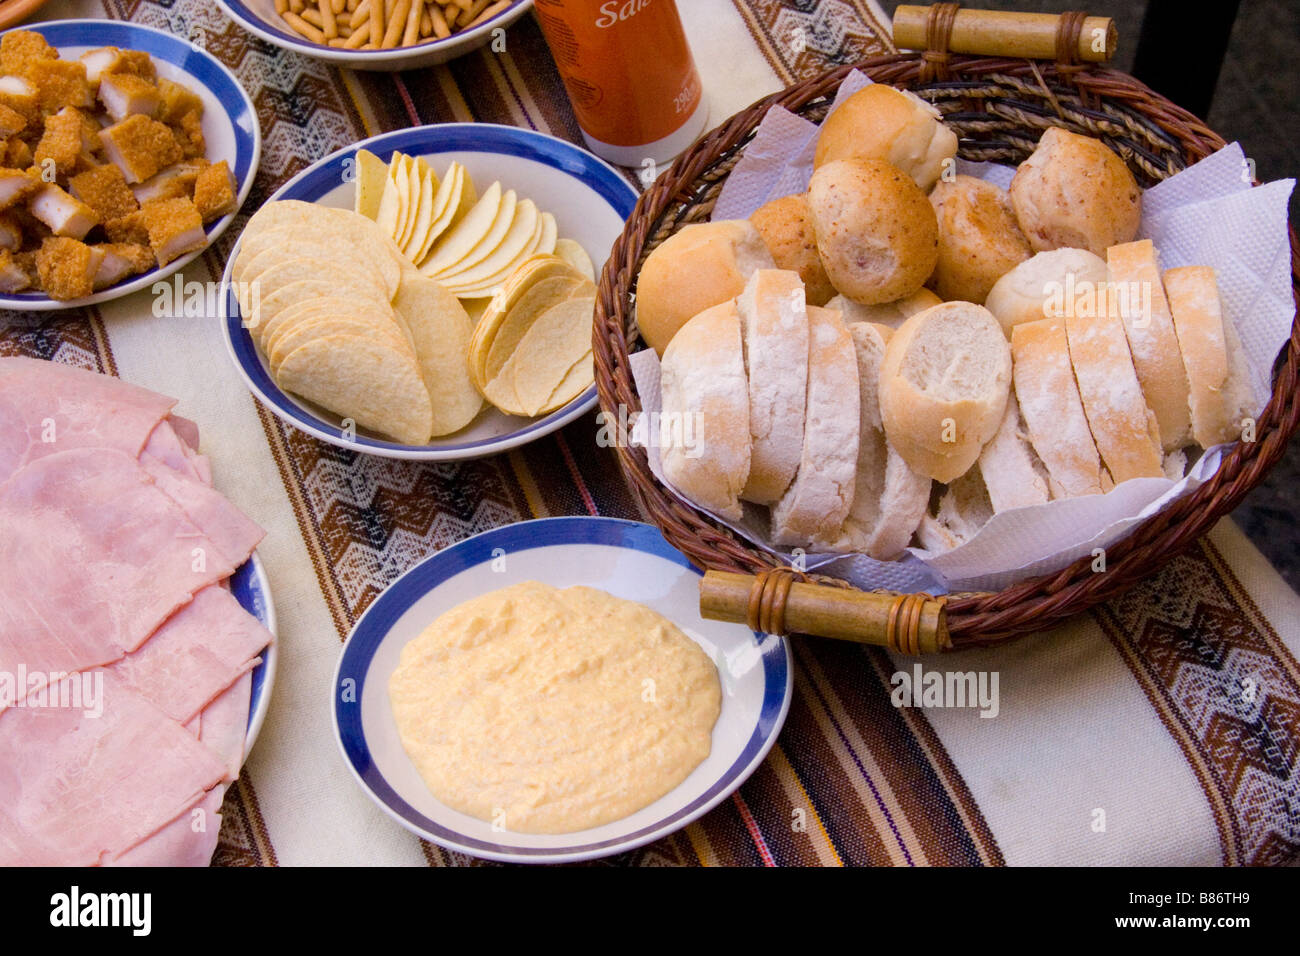 Eine Tabelle mit typischen argentinischen Vorspeisen: Schinken, Brot, einen Brotkorb und Dips. Stockfoto